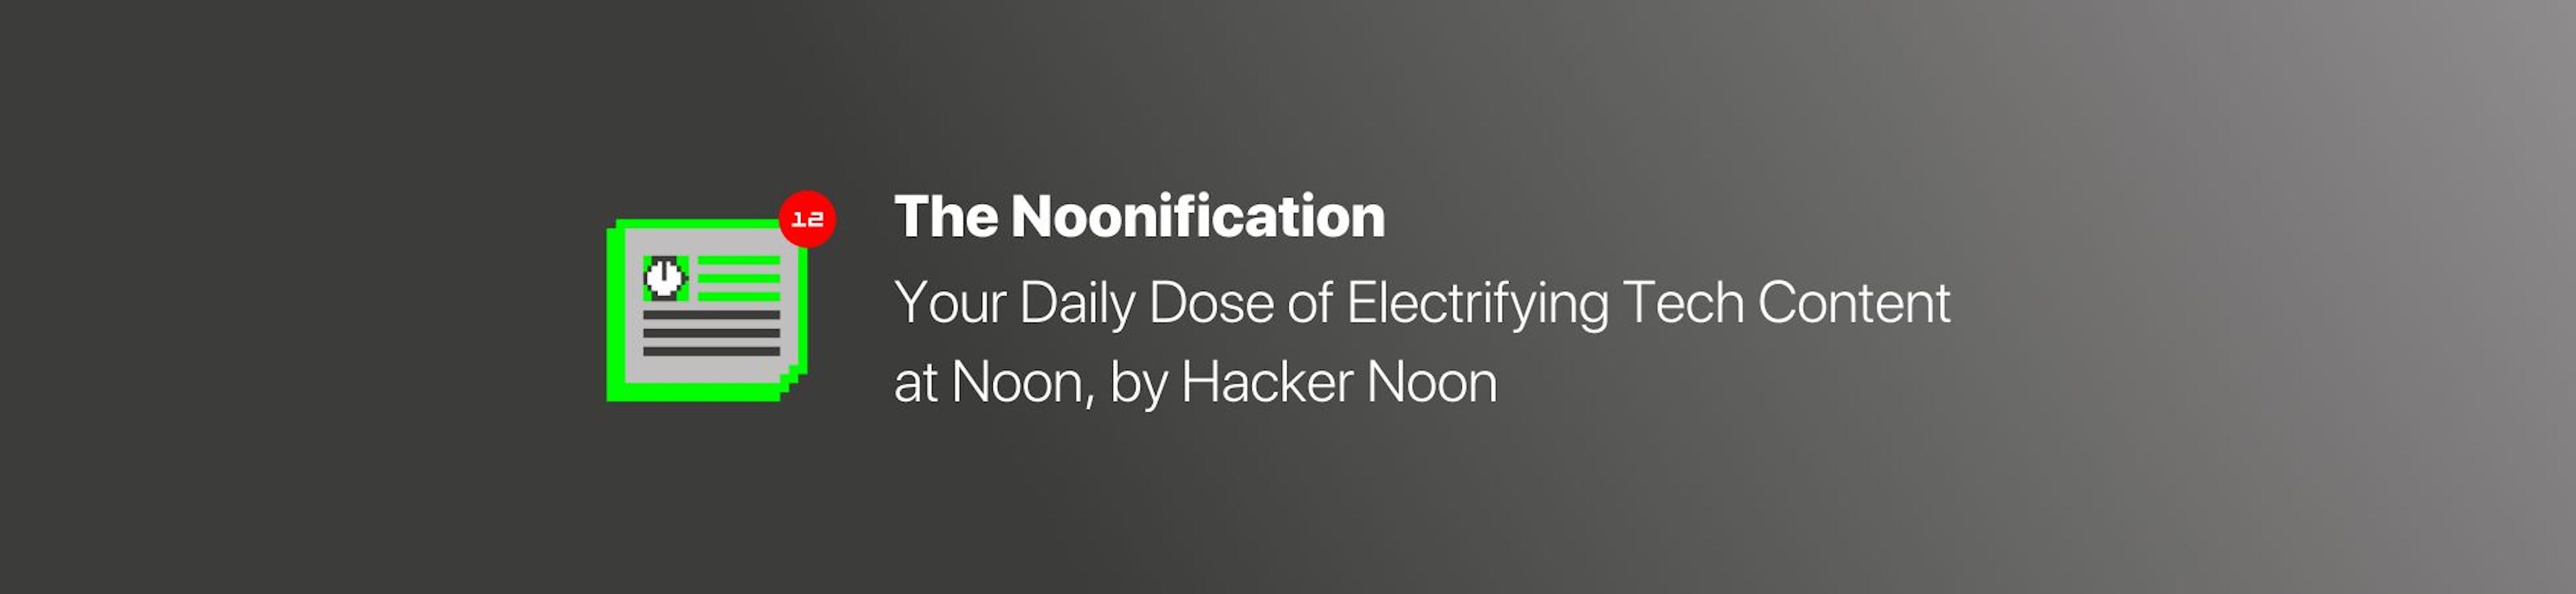 featured image - Noonification: su dosis diaria de contenido tecnológico electrizante al mediodía, por Hacker Noon